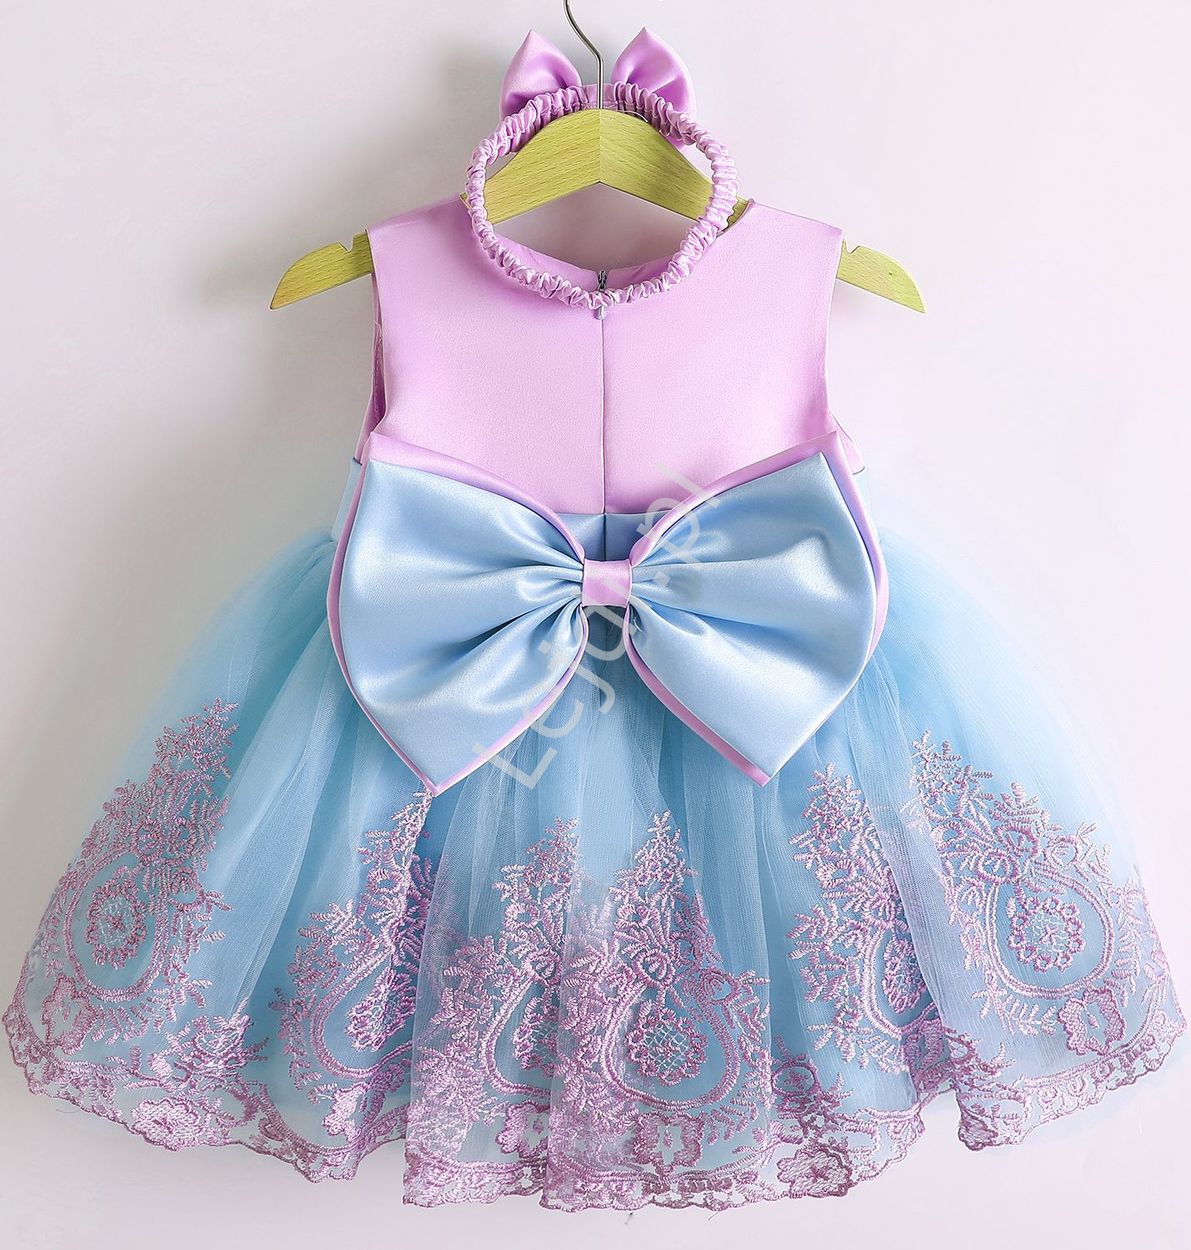 Komplet z opaską, sukienka dla dziewczynki na roczek, na święta, wesele fioletowo błękitna